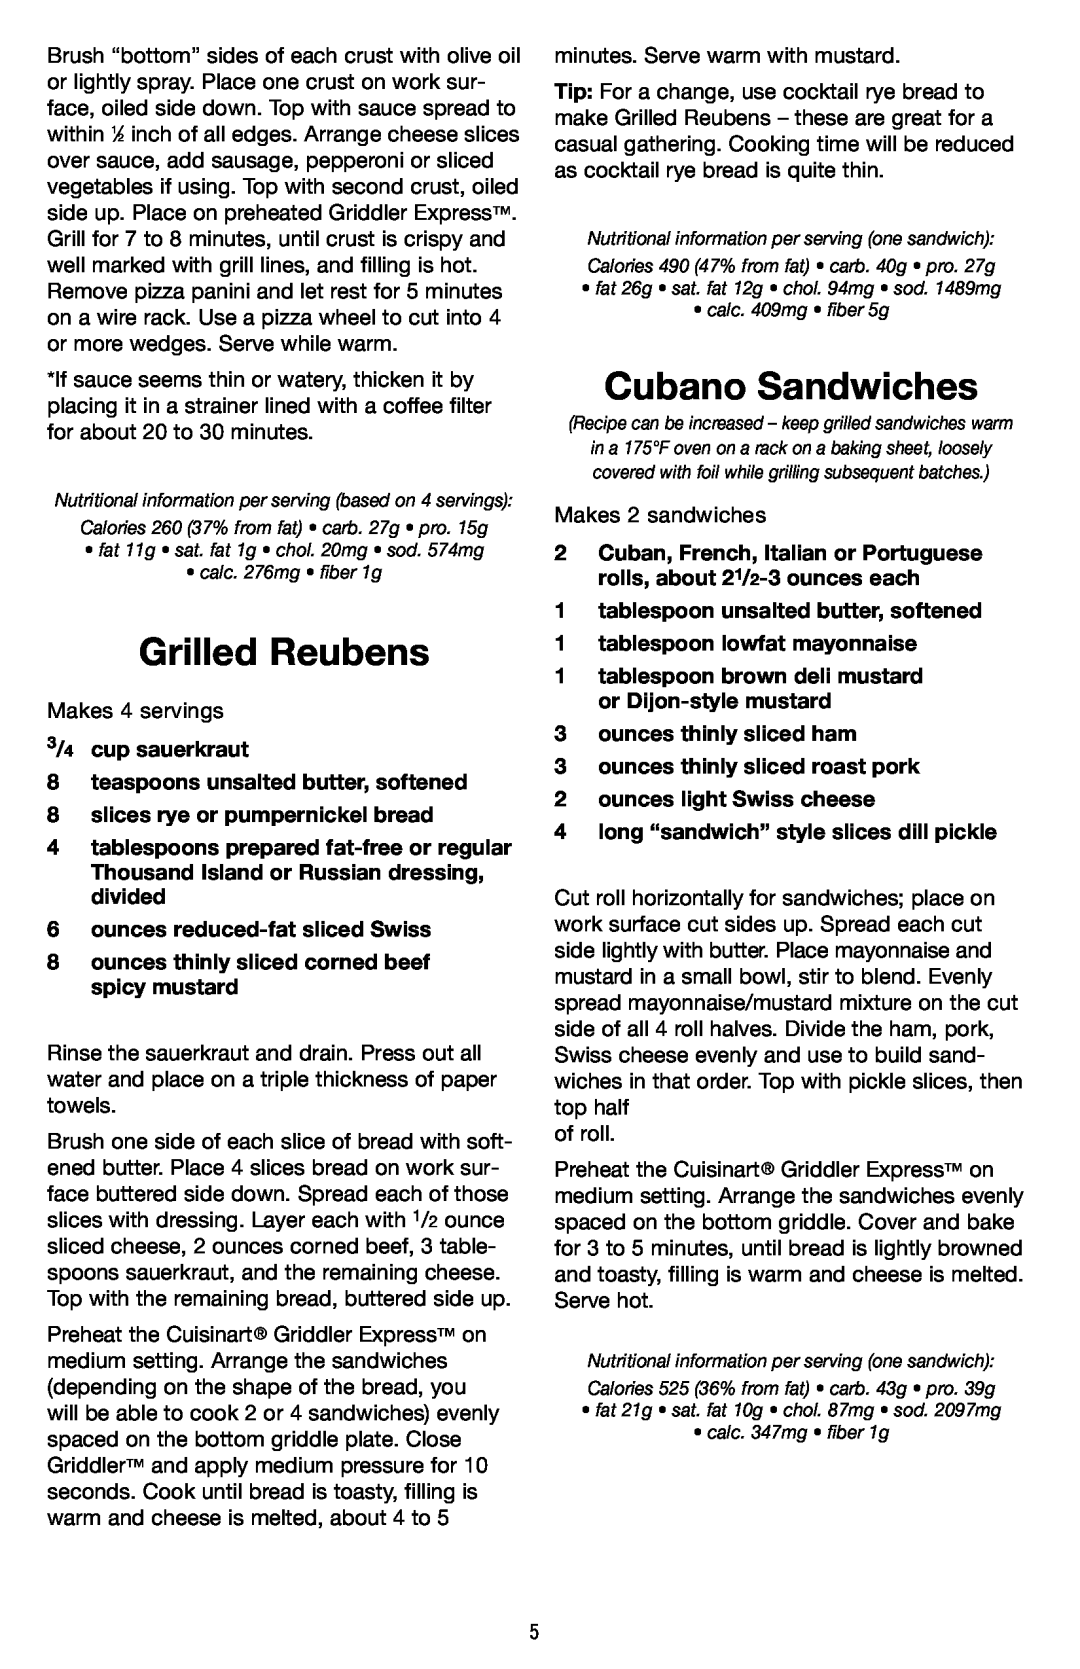 Cuisinart GR-2 manual Grilled Reubens, Cubano Sandwiches, 3/4 cup sauerkraut 8 teaspoons unsalted butter, softened 